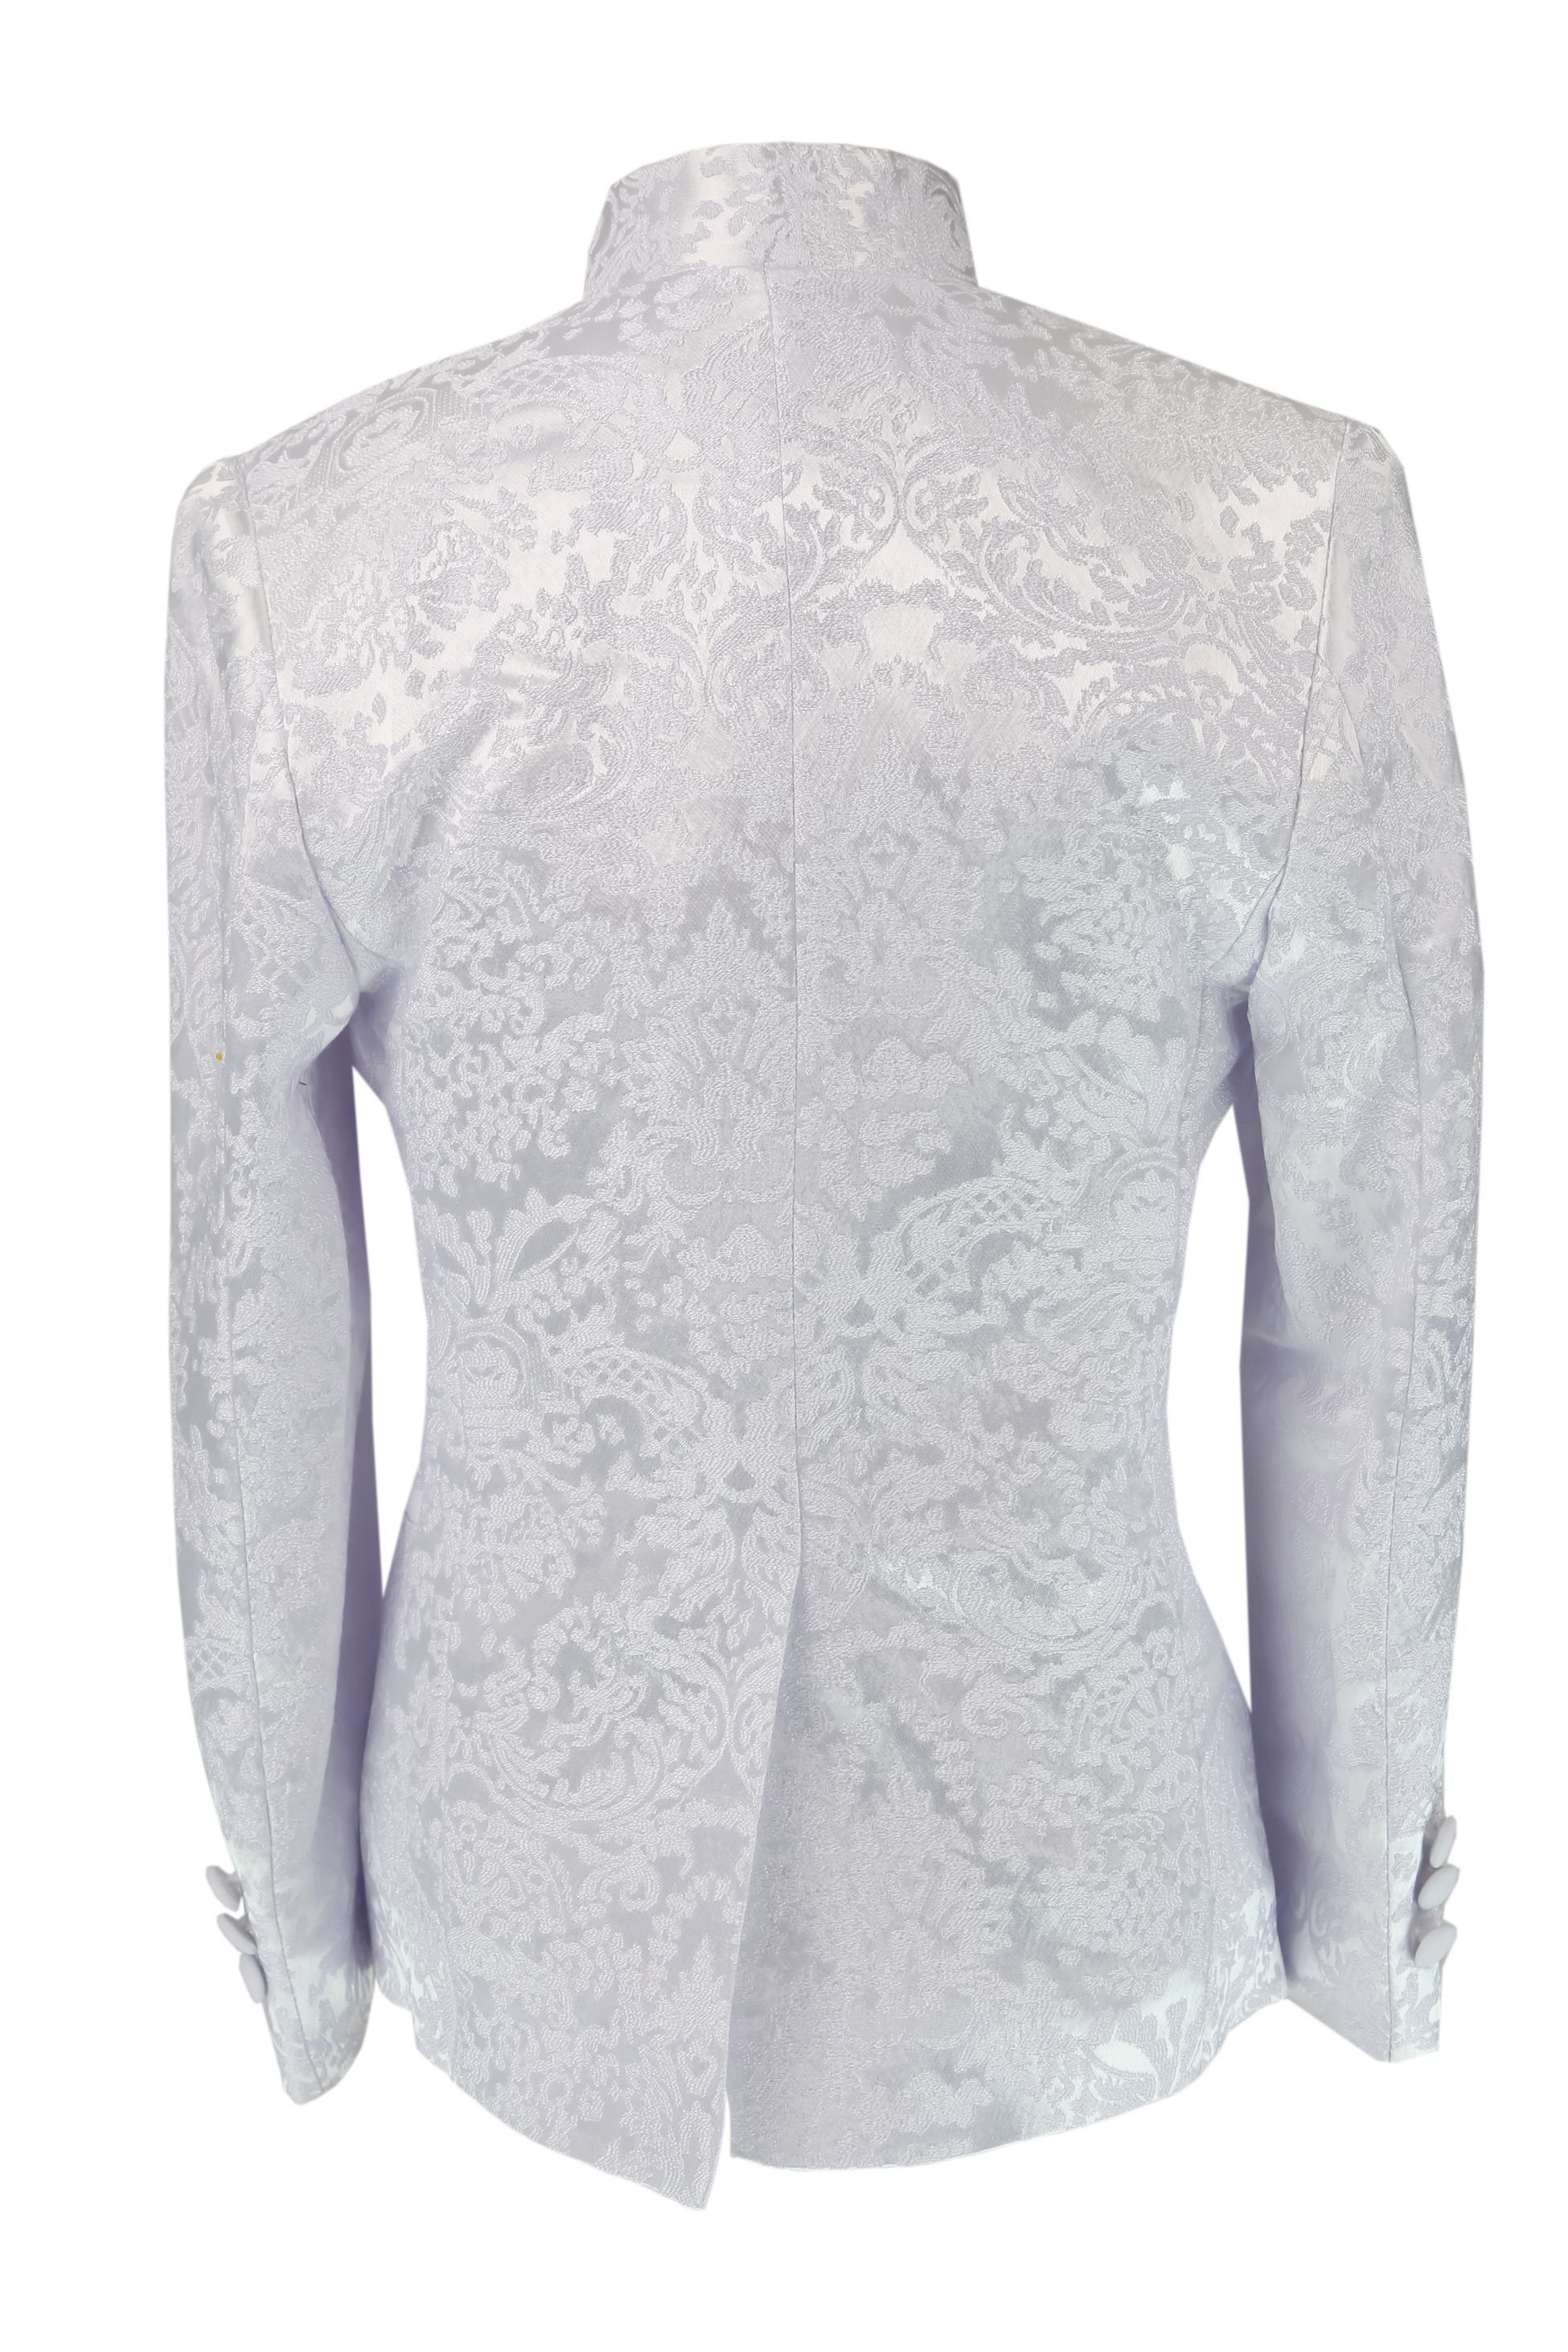 Jungen Satin-Schalkragen Weiß Paisley-Floral Smoking Anzug Set